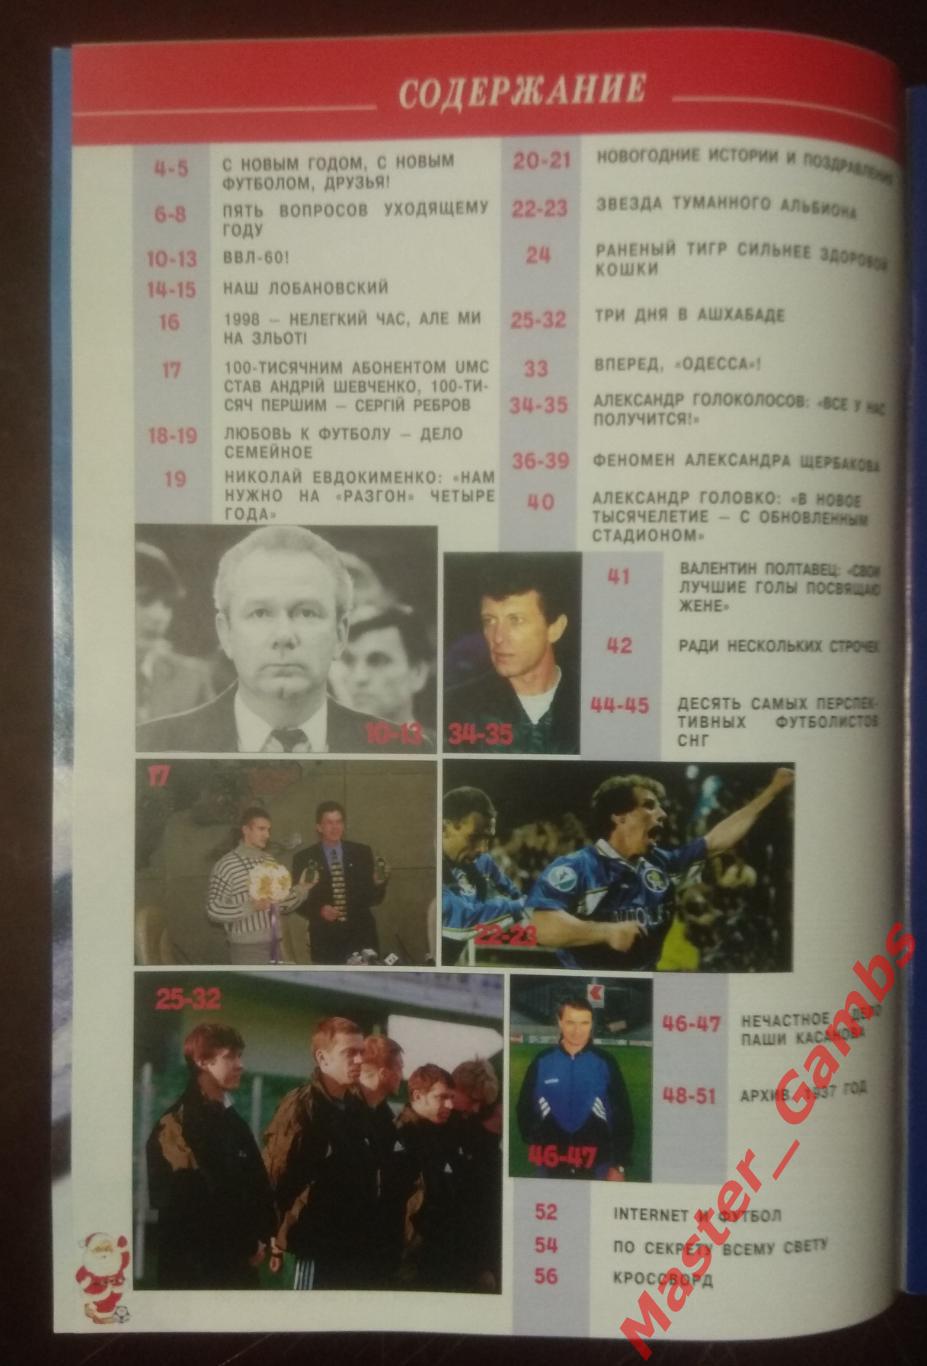 Журнал Футбол интер # 10 (14) 1998/1999 (СК Одесса / сборная Украина) 1